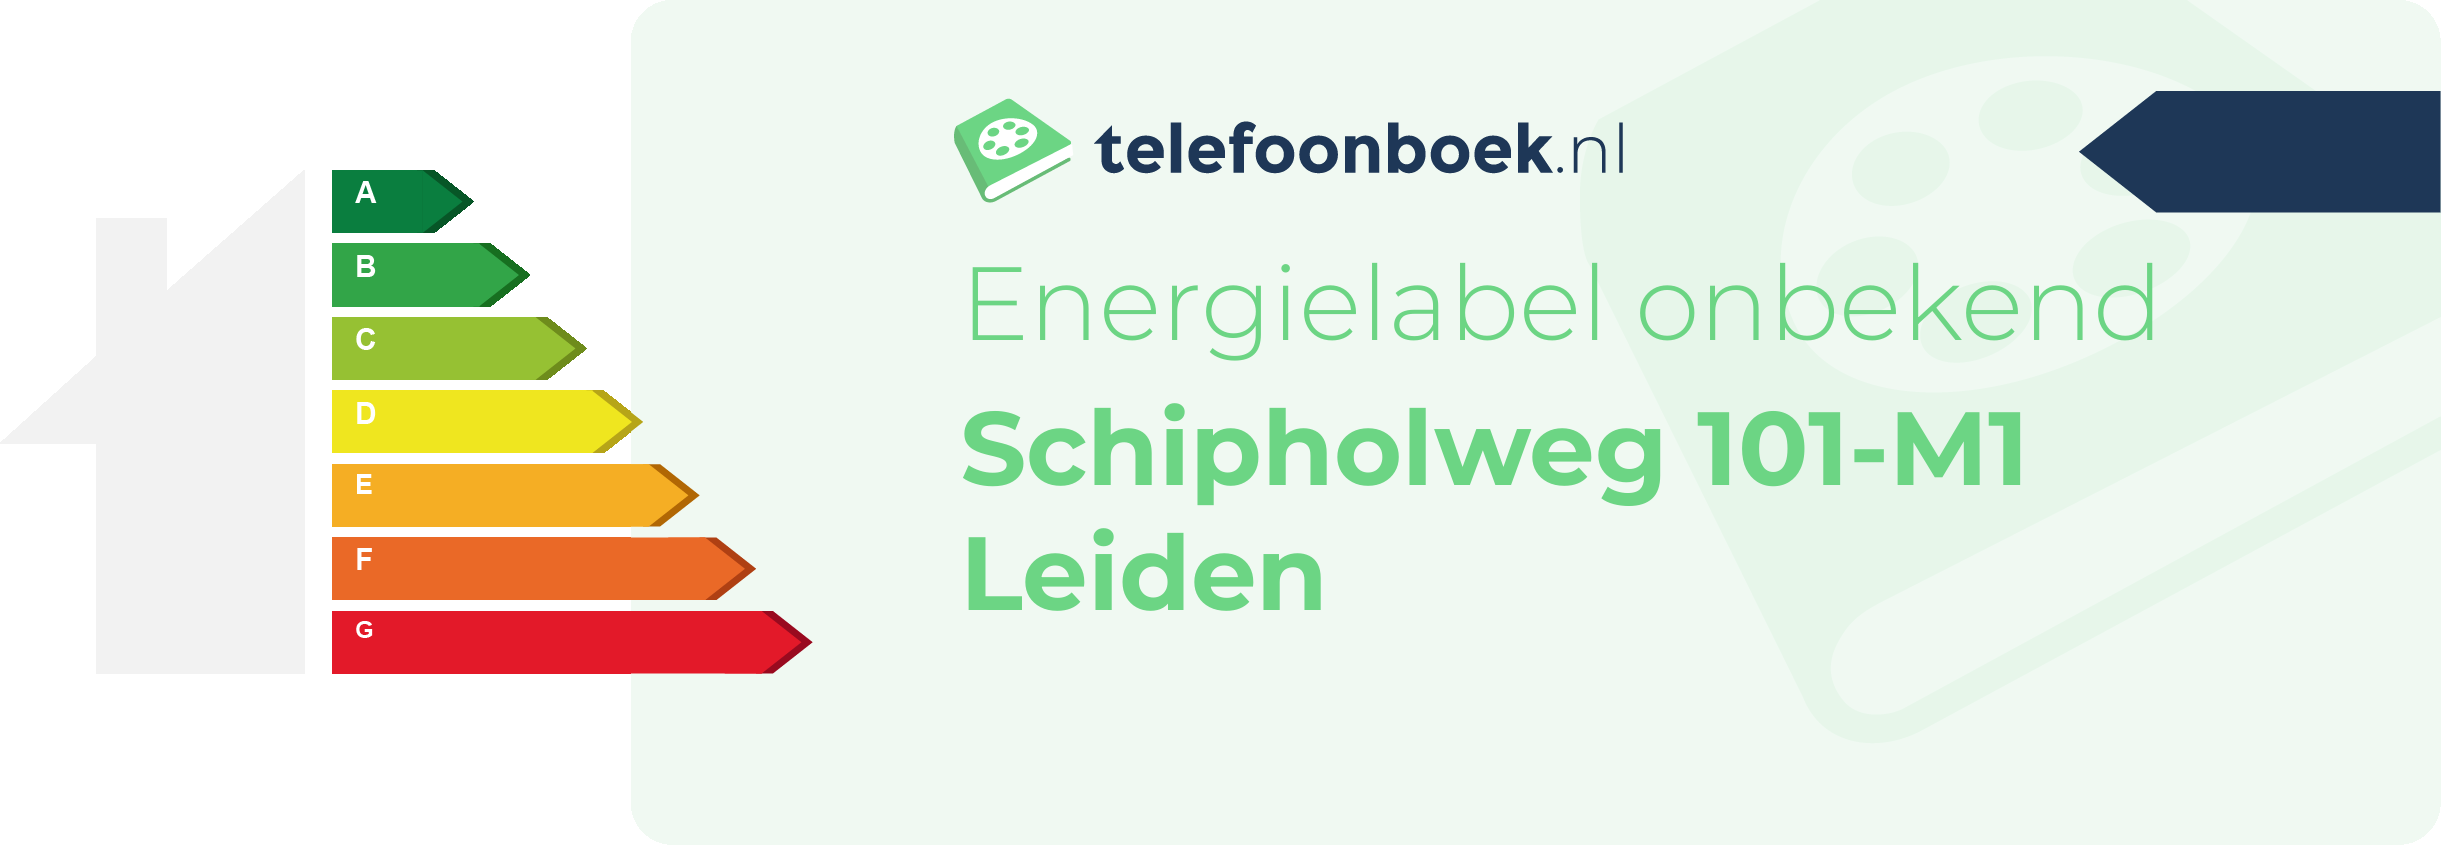 Energielabel Schipholweg 101-M1 Leiden